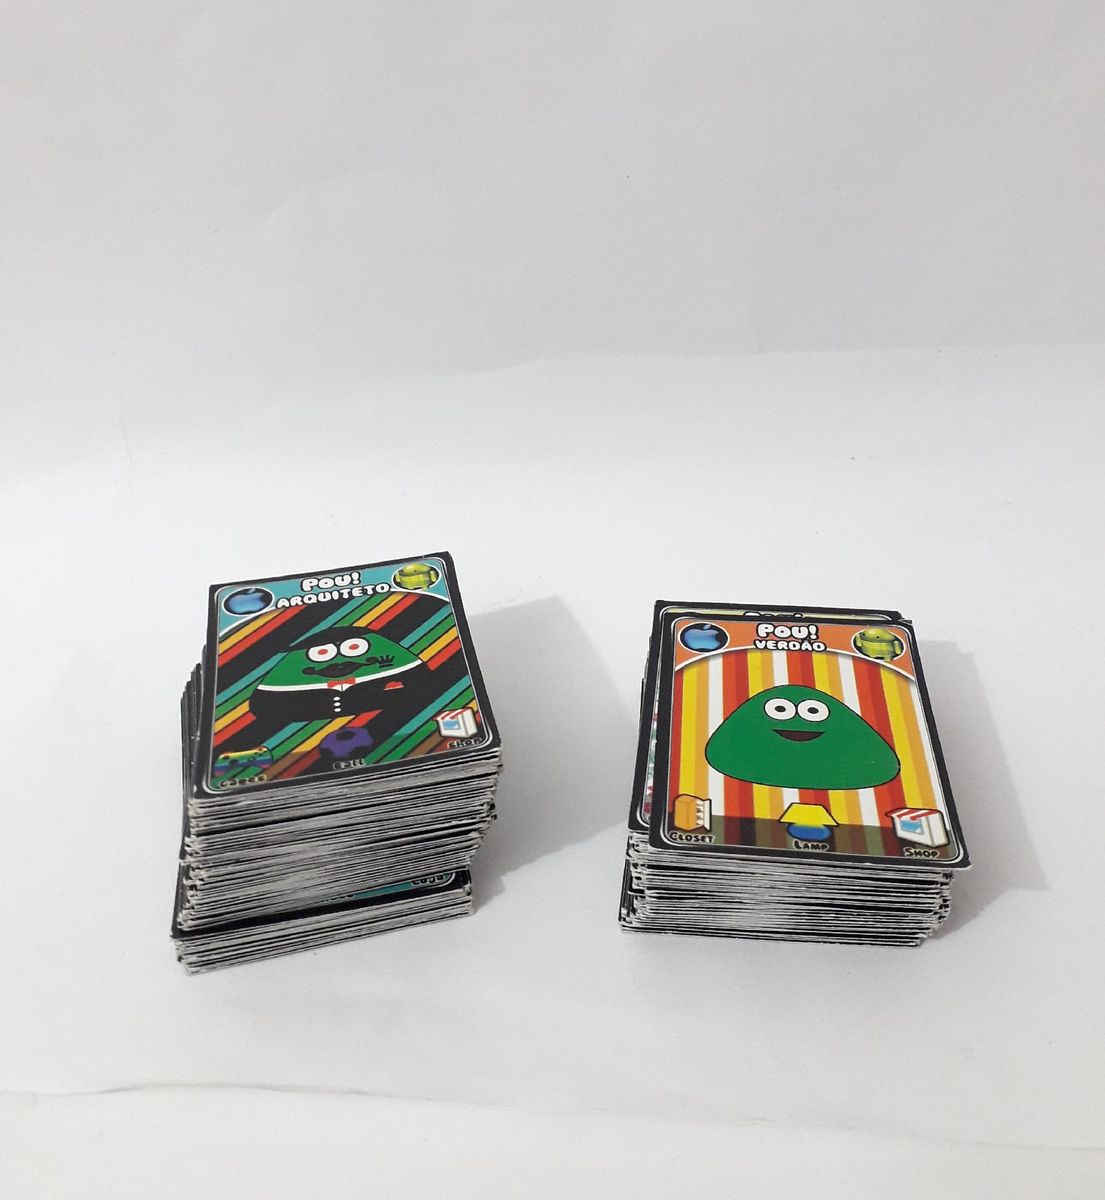 Pou Cards 1 - Coleção de cartas do pou 